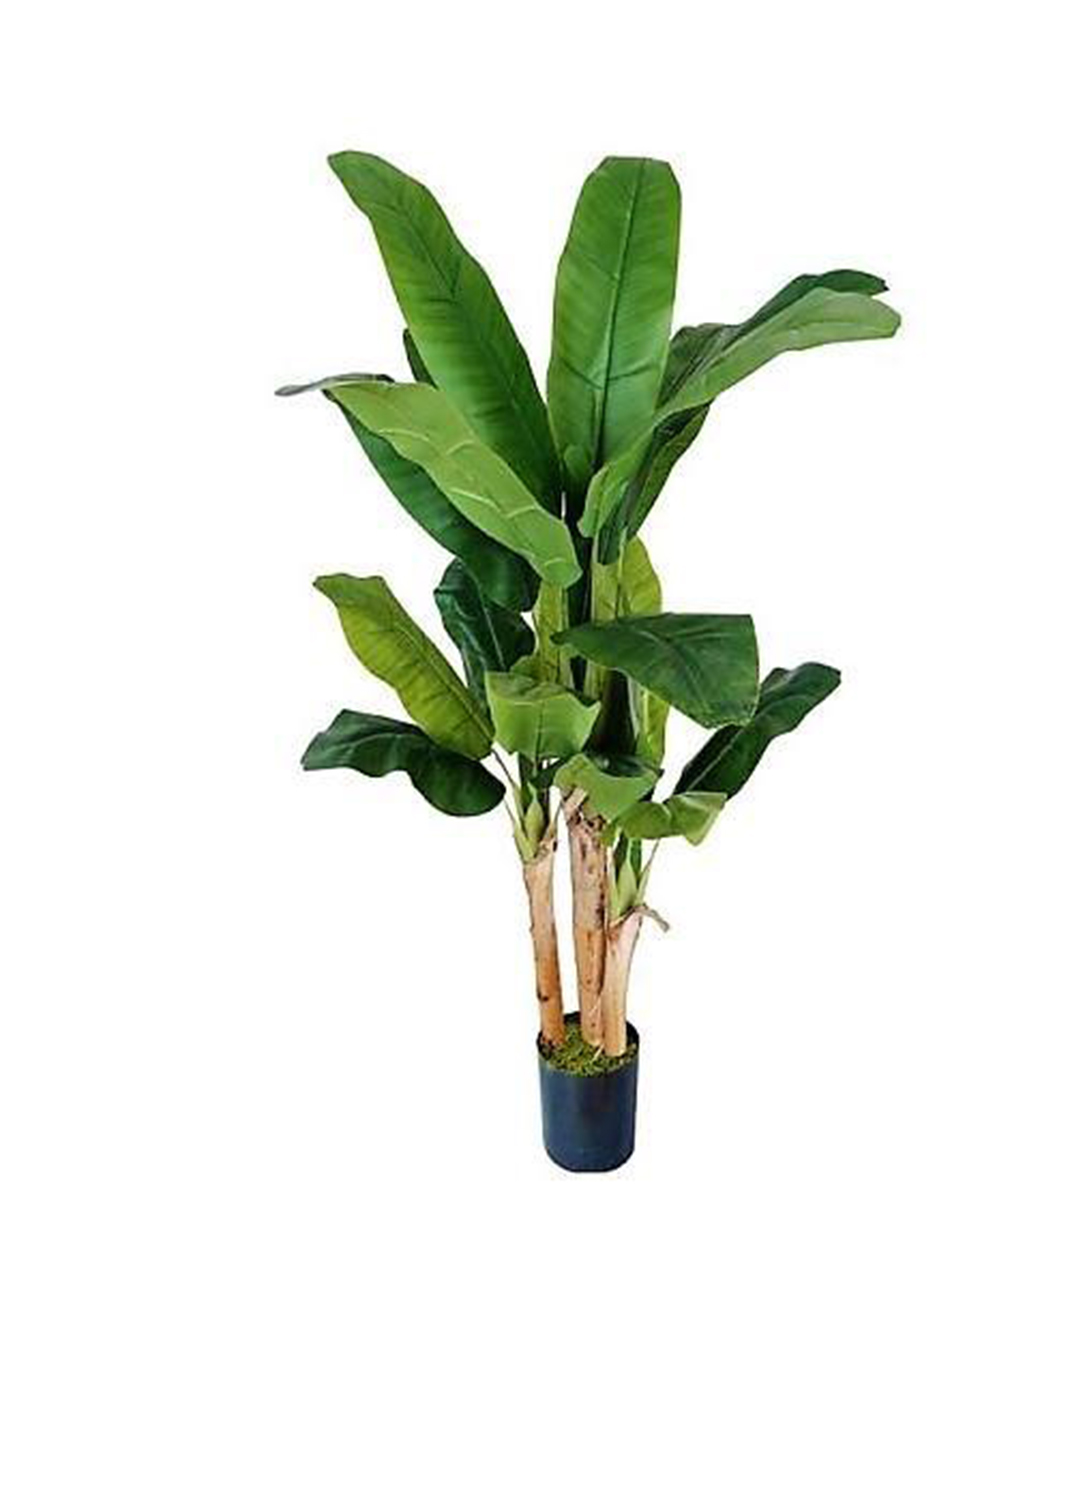 Musa paradisiaca, Banana Tree size 1.8m